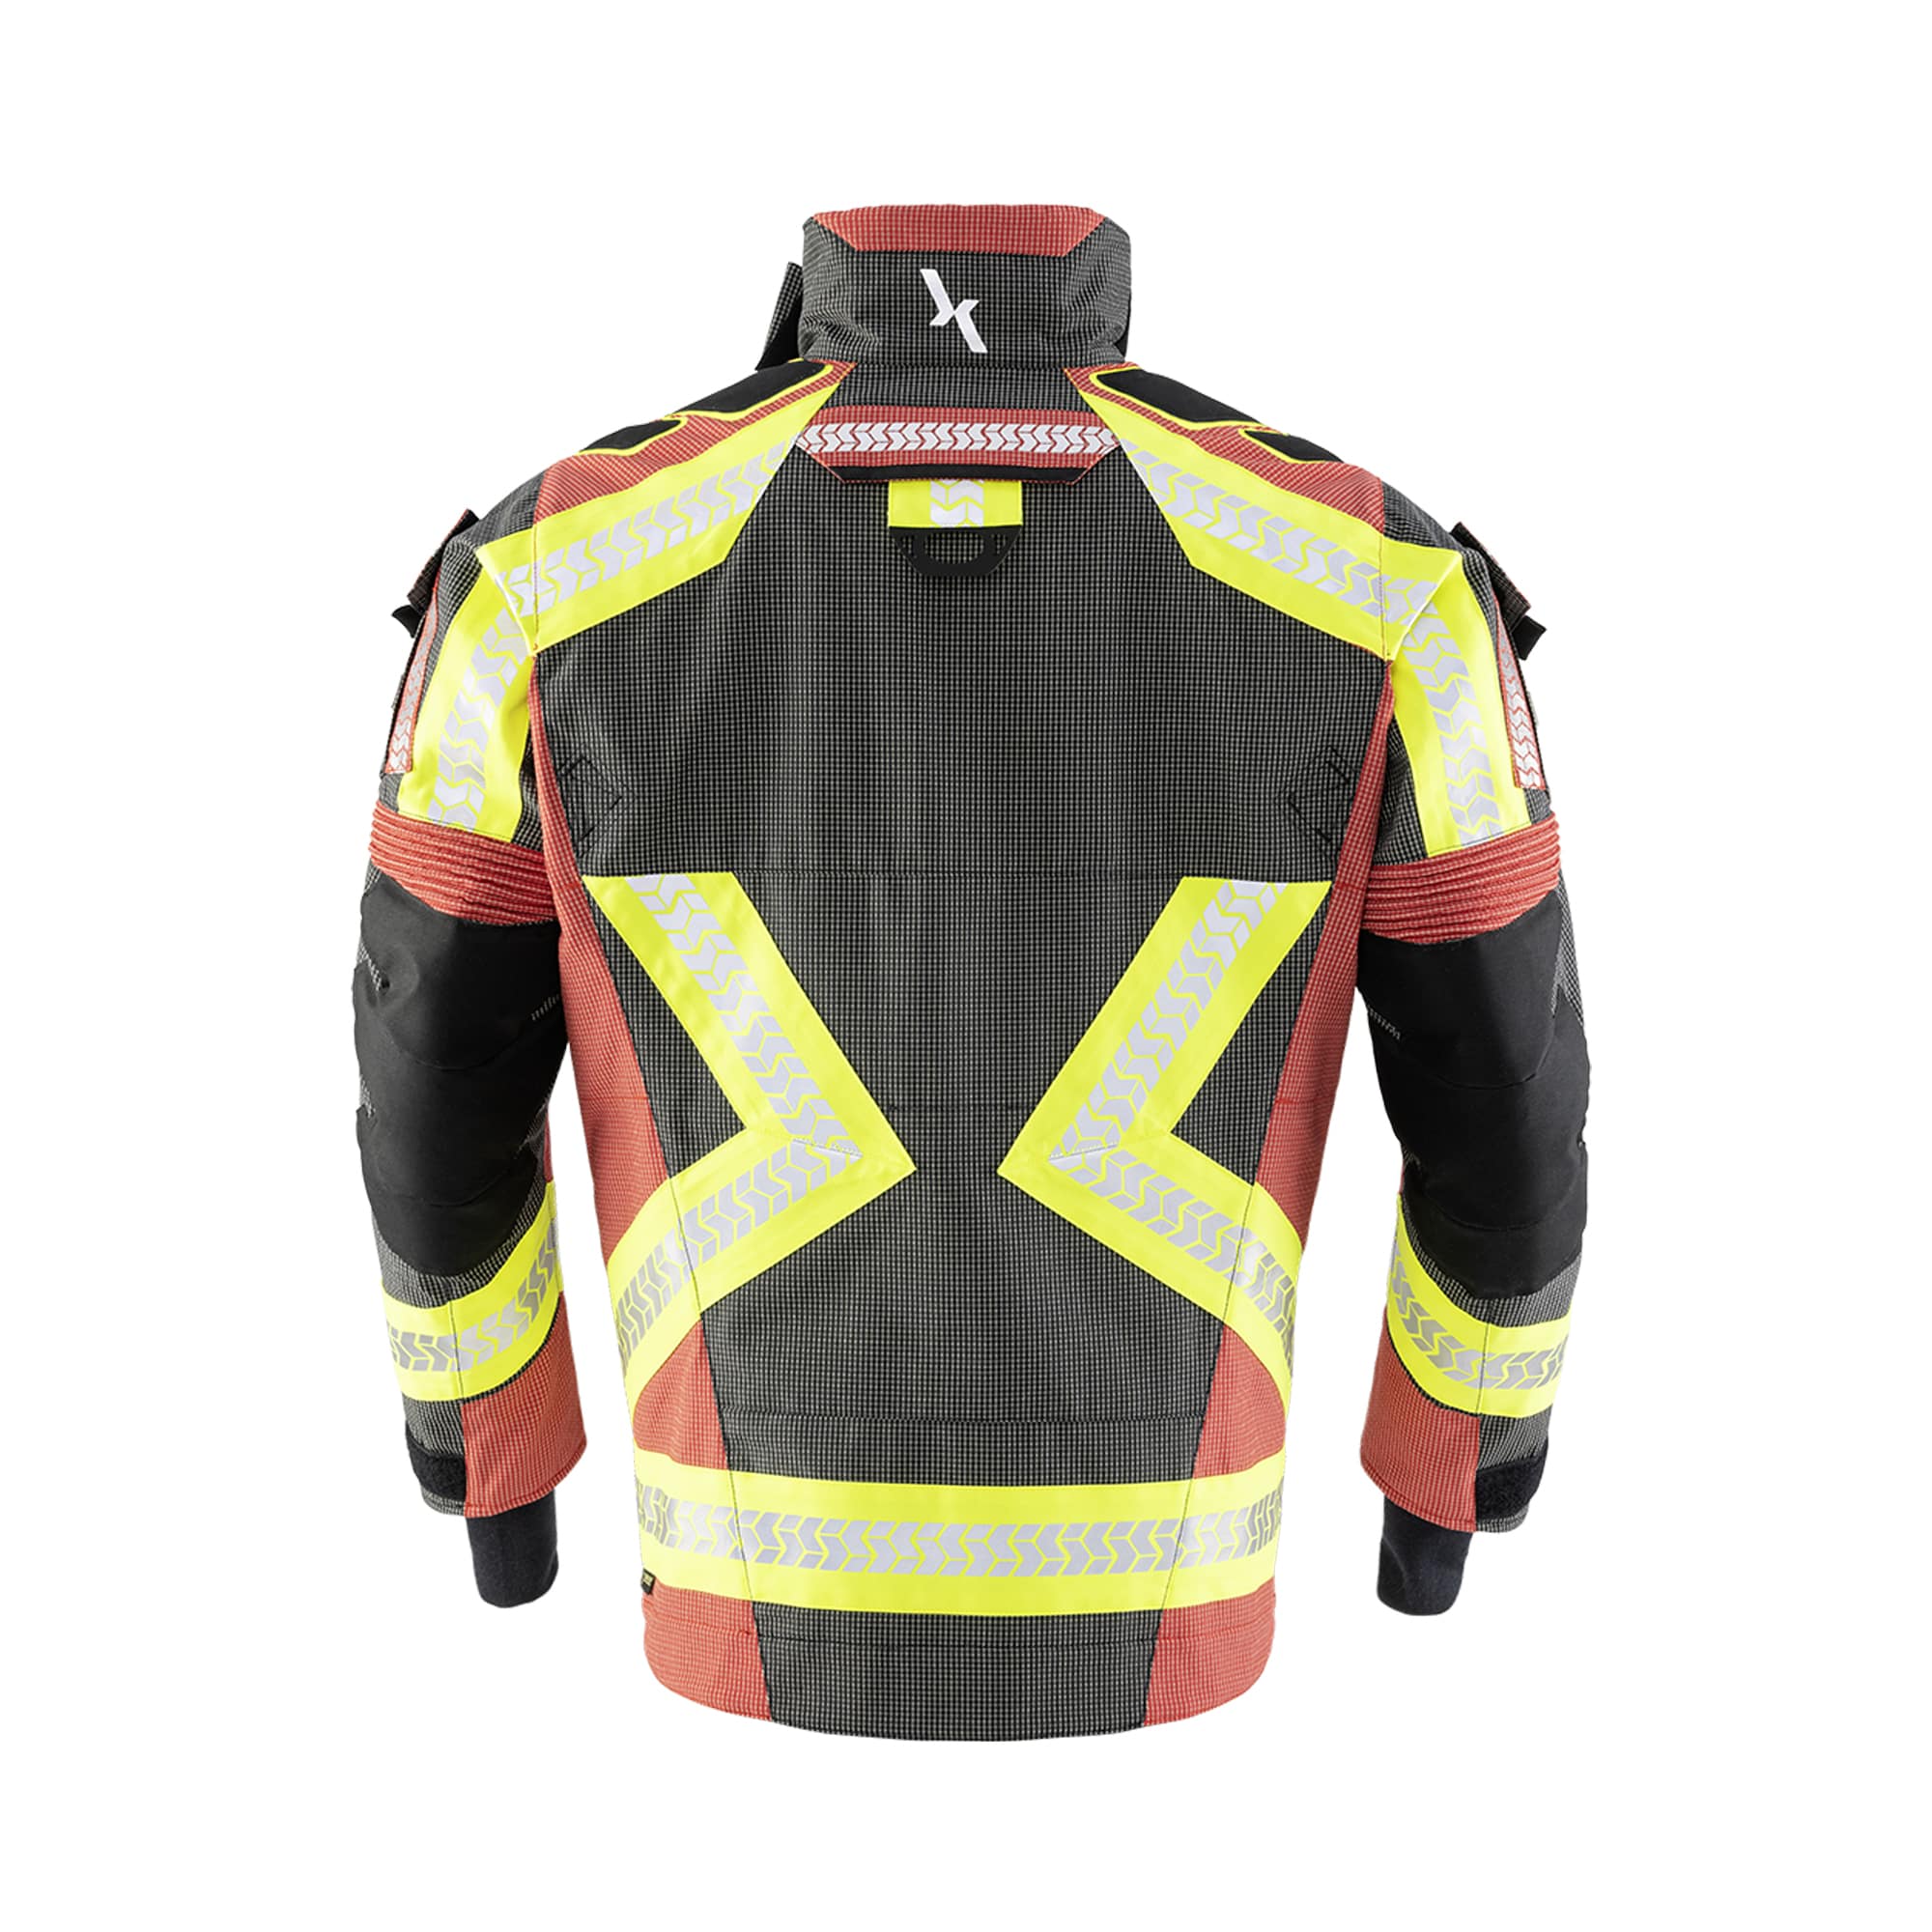 Interventno vatrogasno odijelo Texport Fire X-Flash